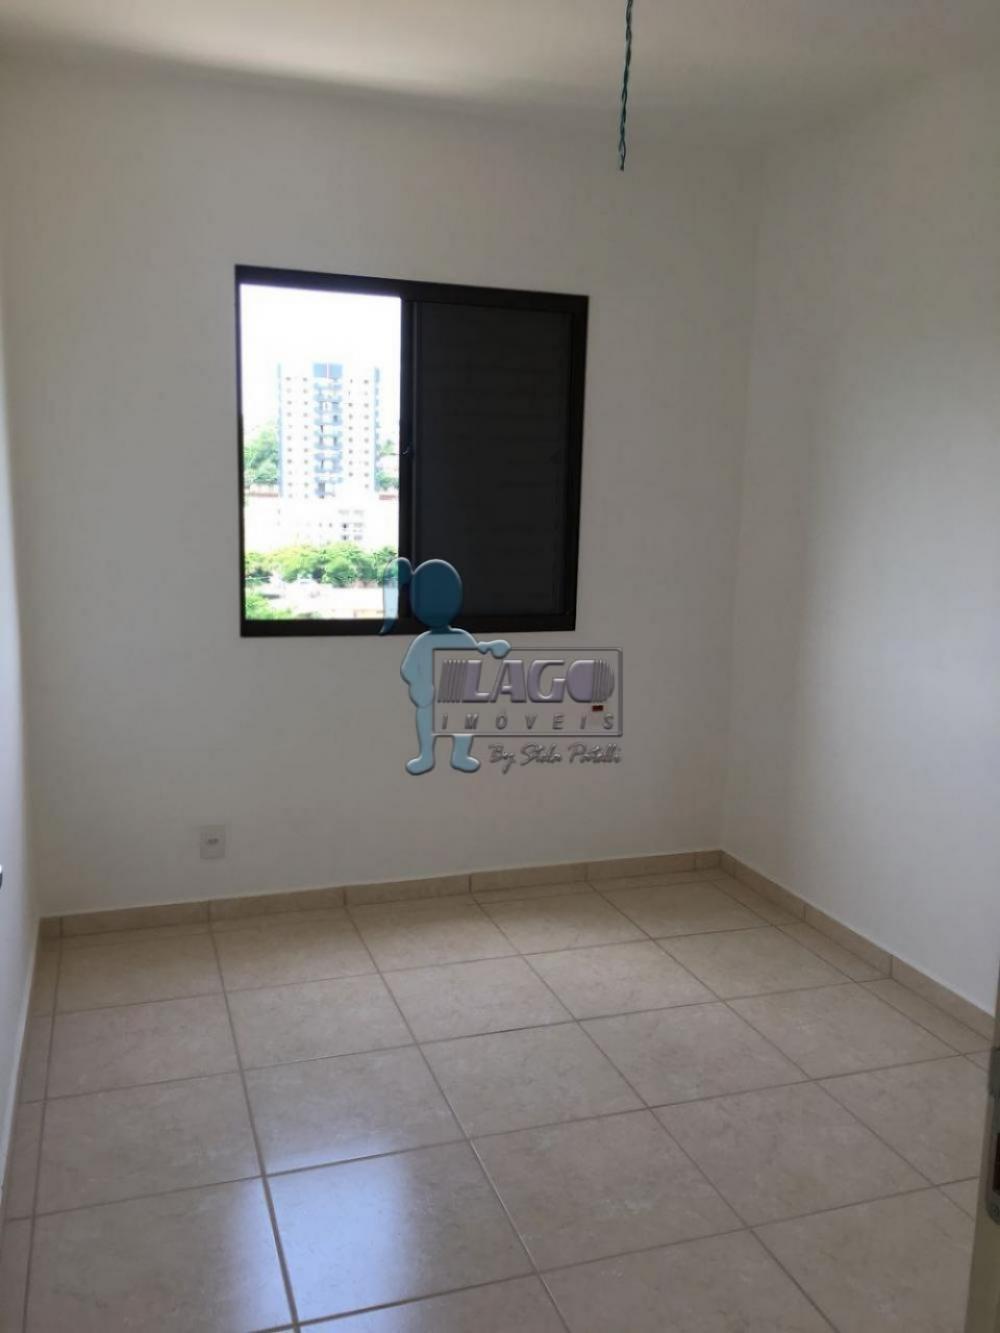 Comprar Apartamentos / Padrão em Ribeirão Preto R$ 175.000,00 - Foto 5